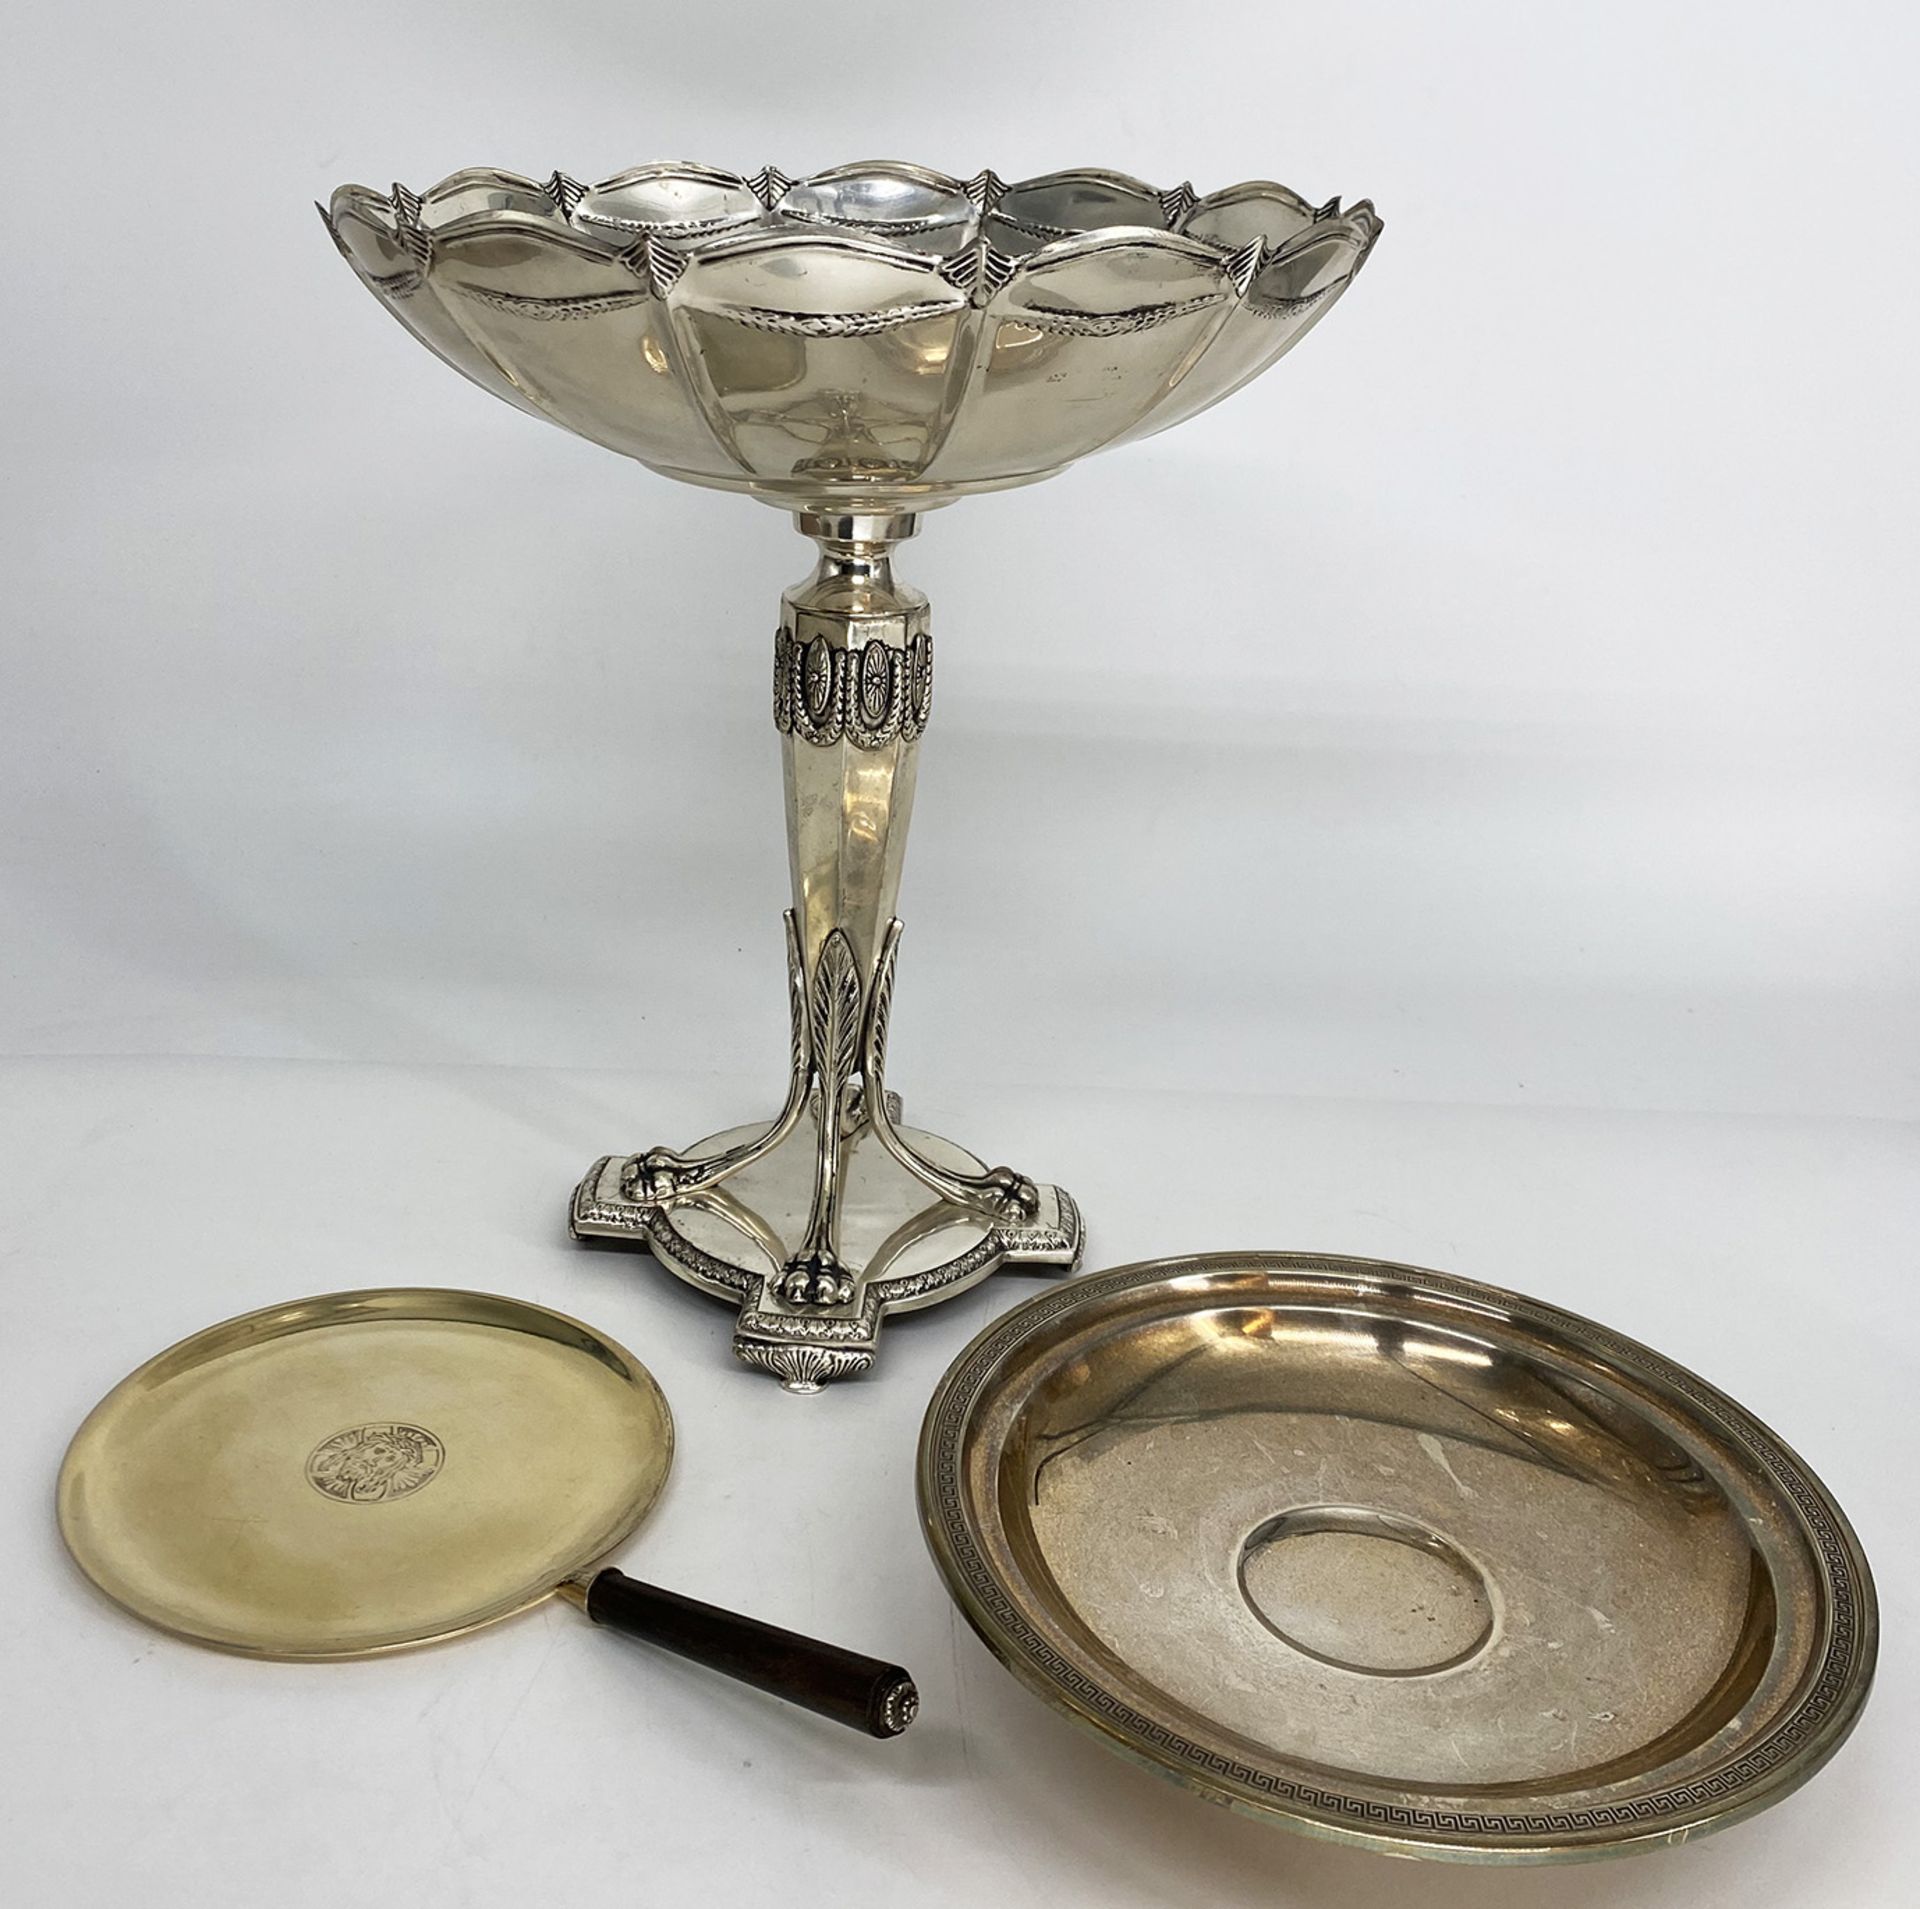 Konvolut aus 3 Objekten: Patene bzw Hostienschale, 900er Silber, im Spiegel Jesusbildnis, Holzgriff,